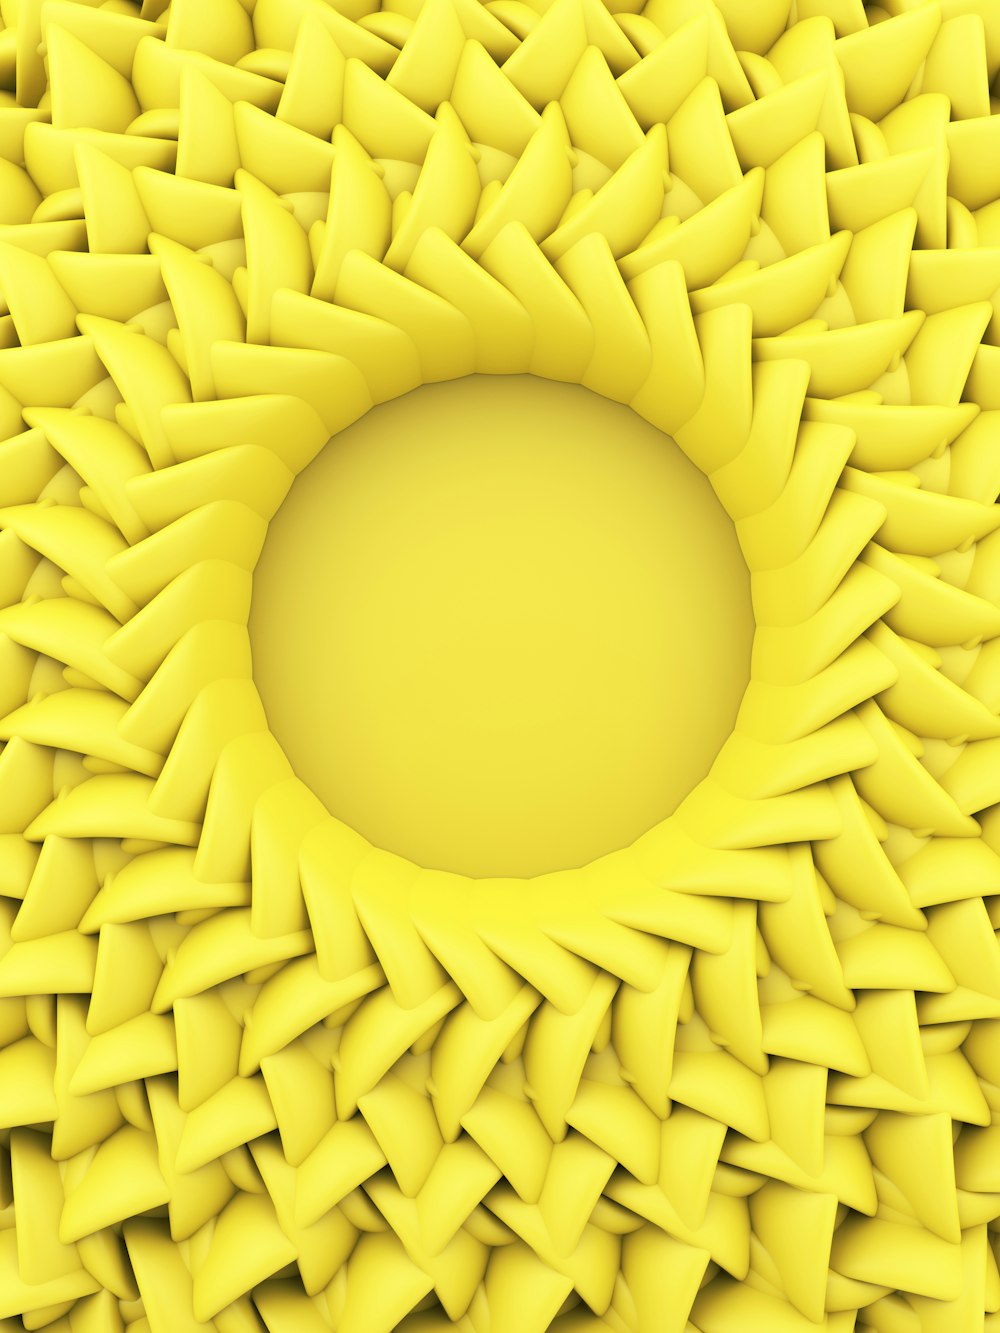 yellow round hole on white background